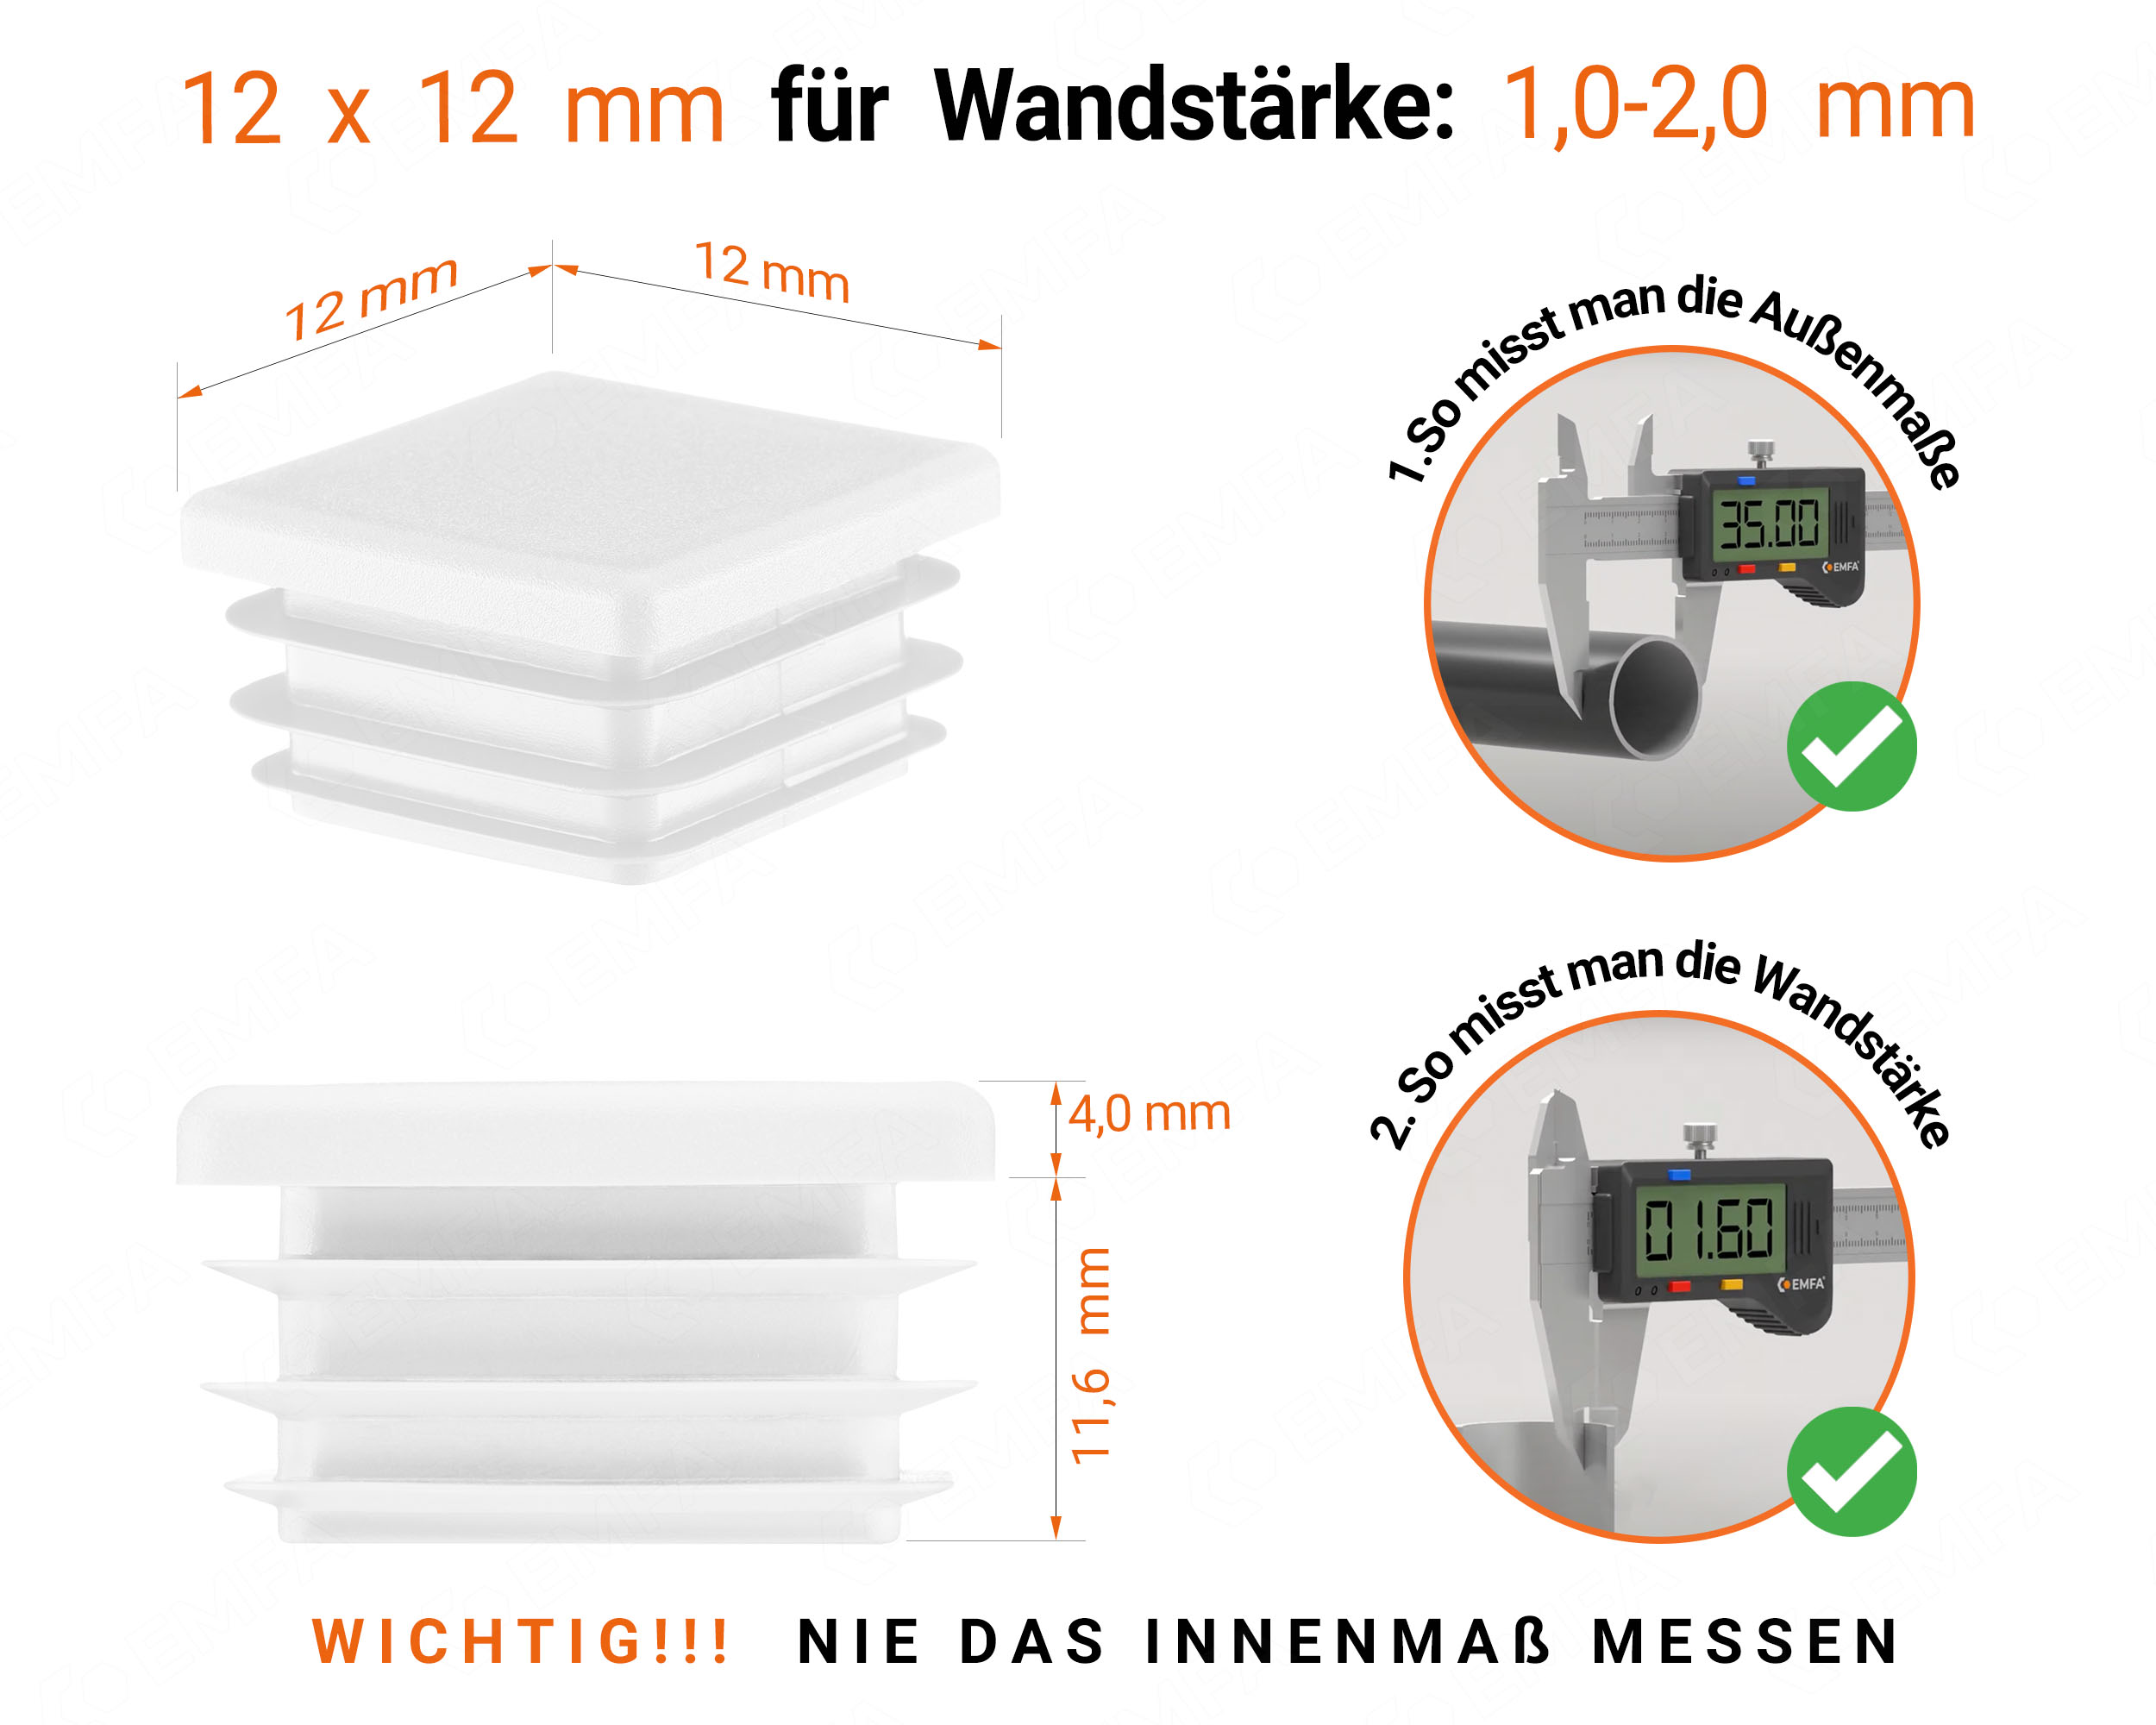 Weiße Endkappe für Vierkantrohre in der Größe 12x12 mm mit technischen Abmessungen und Anleitung für korrekte Messung